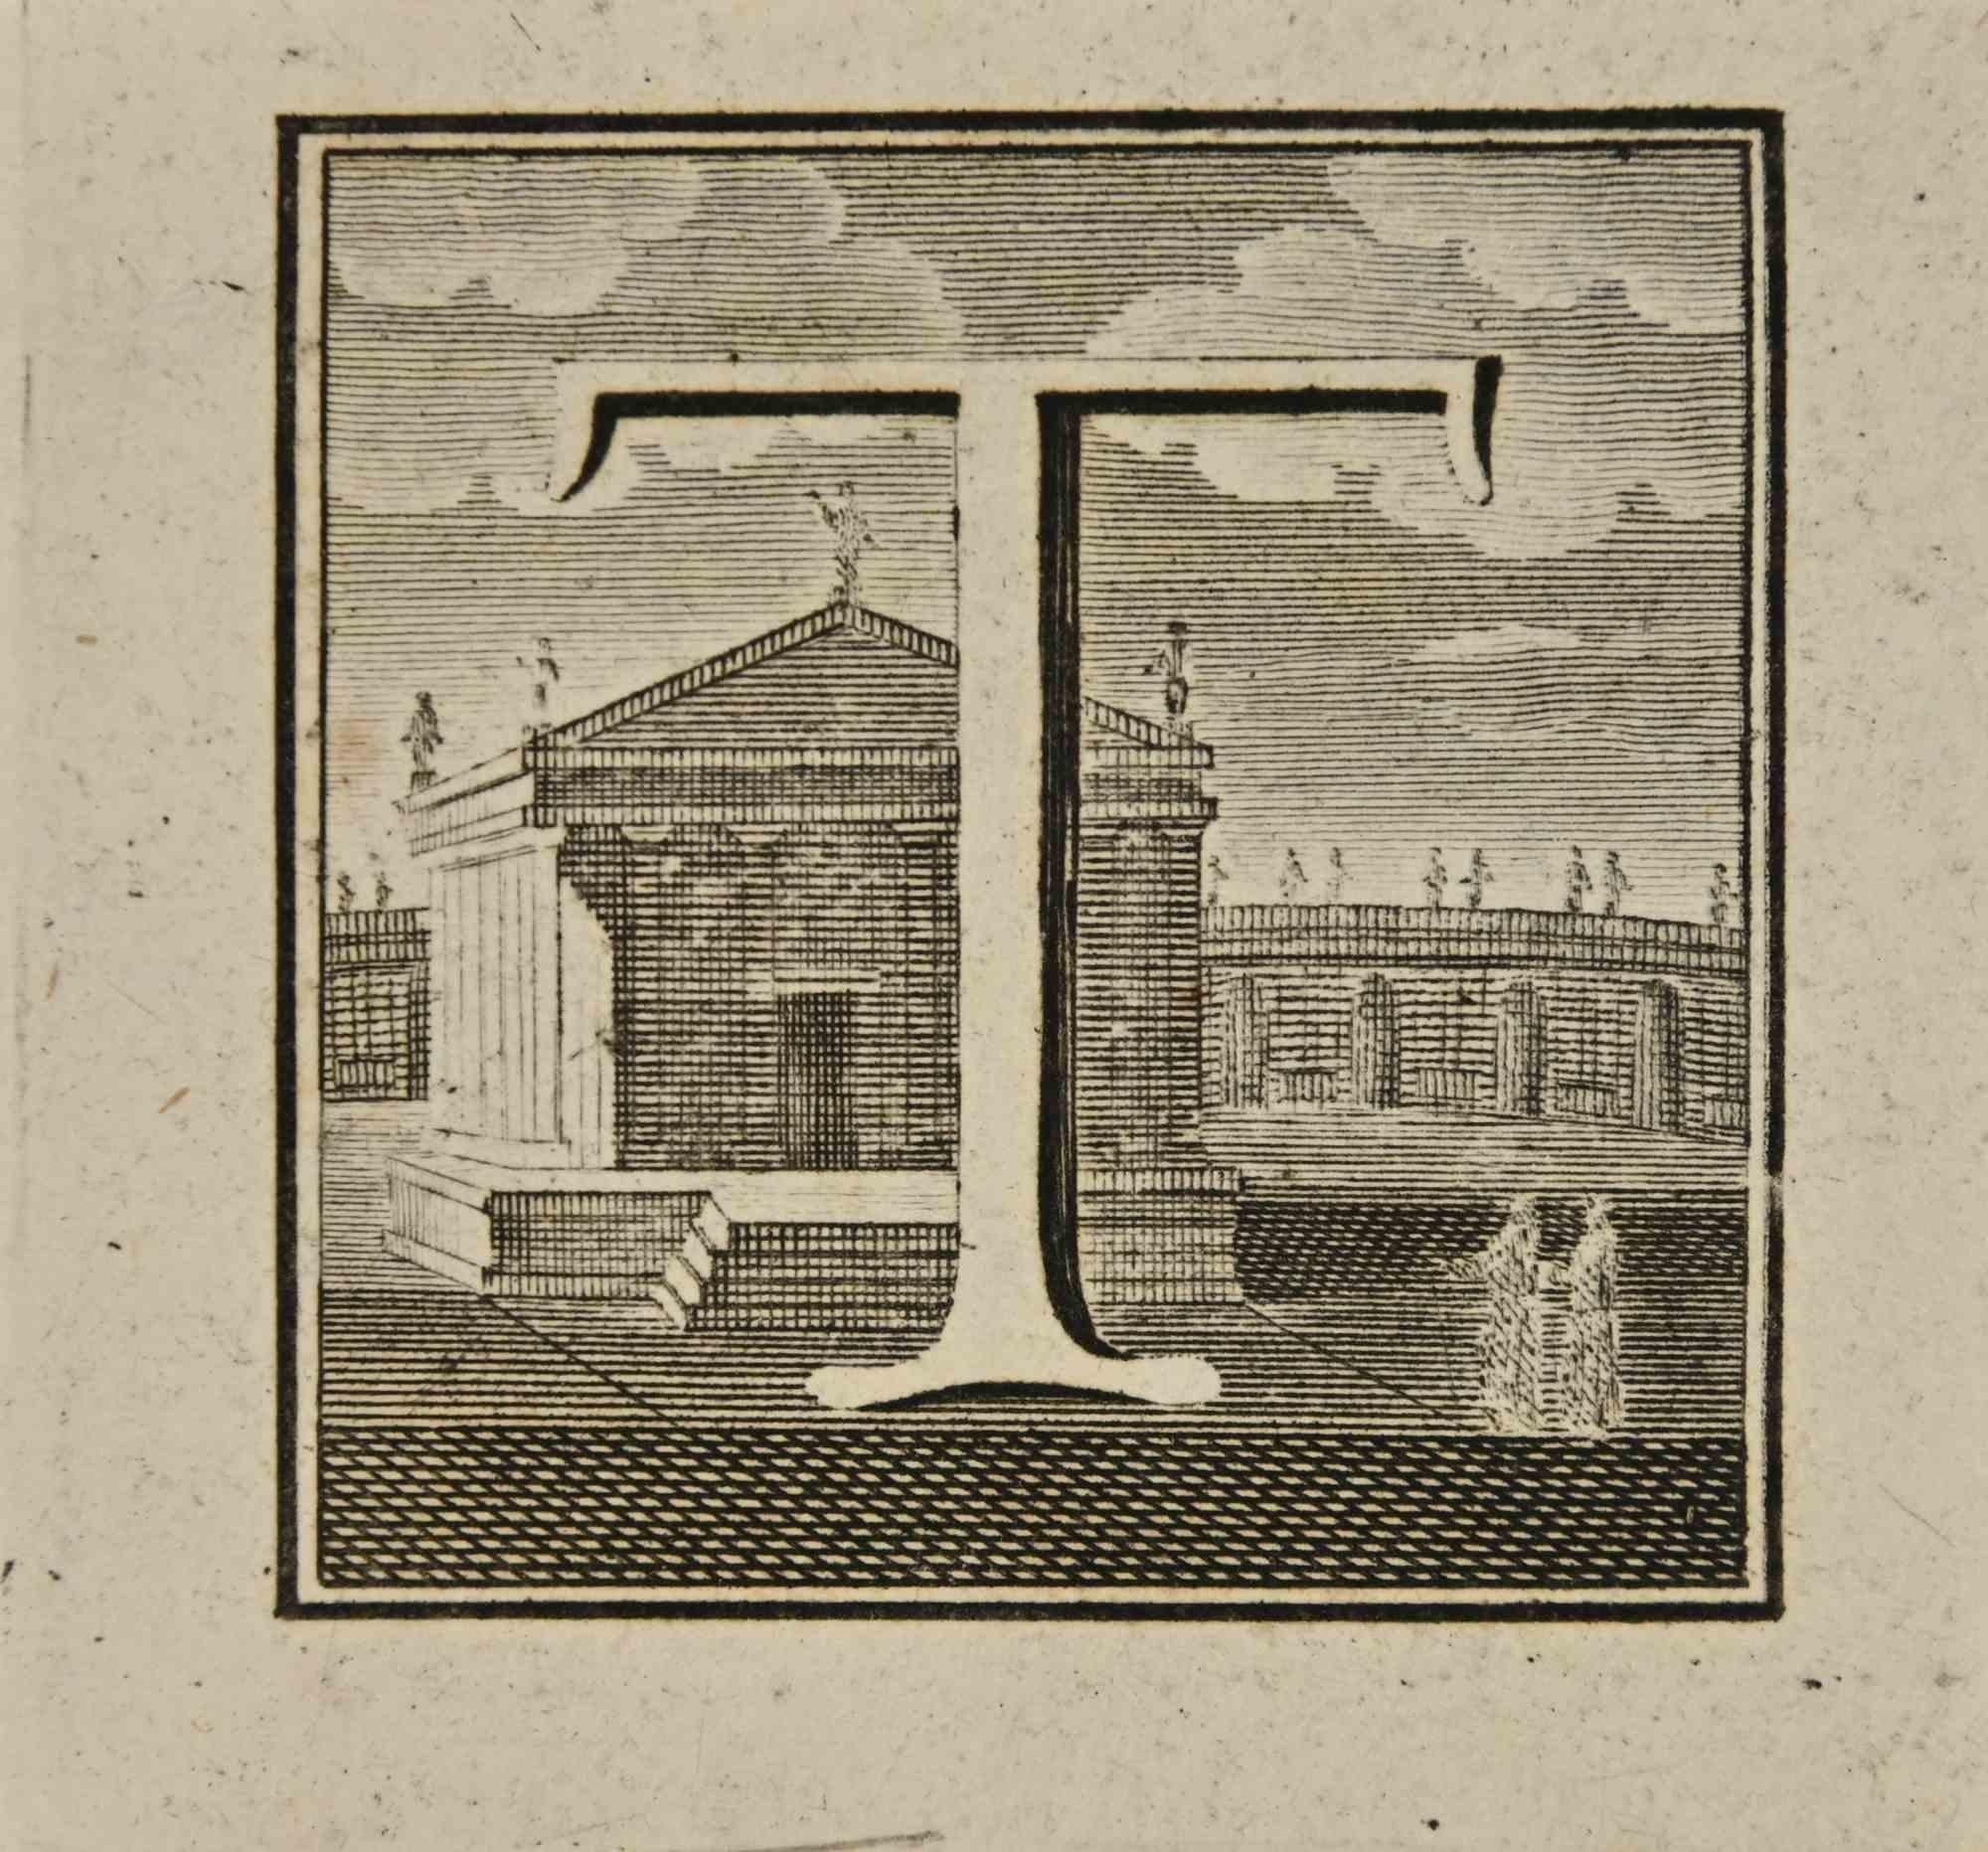 Lettre de l'alphabet T,  de la série "Antiquités d'Herculanum", est une gravure sur papier réalisée par Luigi Vanvitelli au 18ème siècle.

Bonnes conditions.

La gravure appartient à la suite d'estampes "Antiquités d'Herculanum exposées" (titre